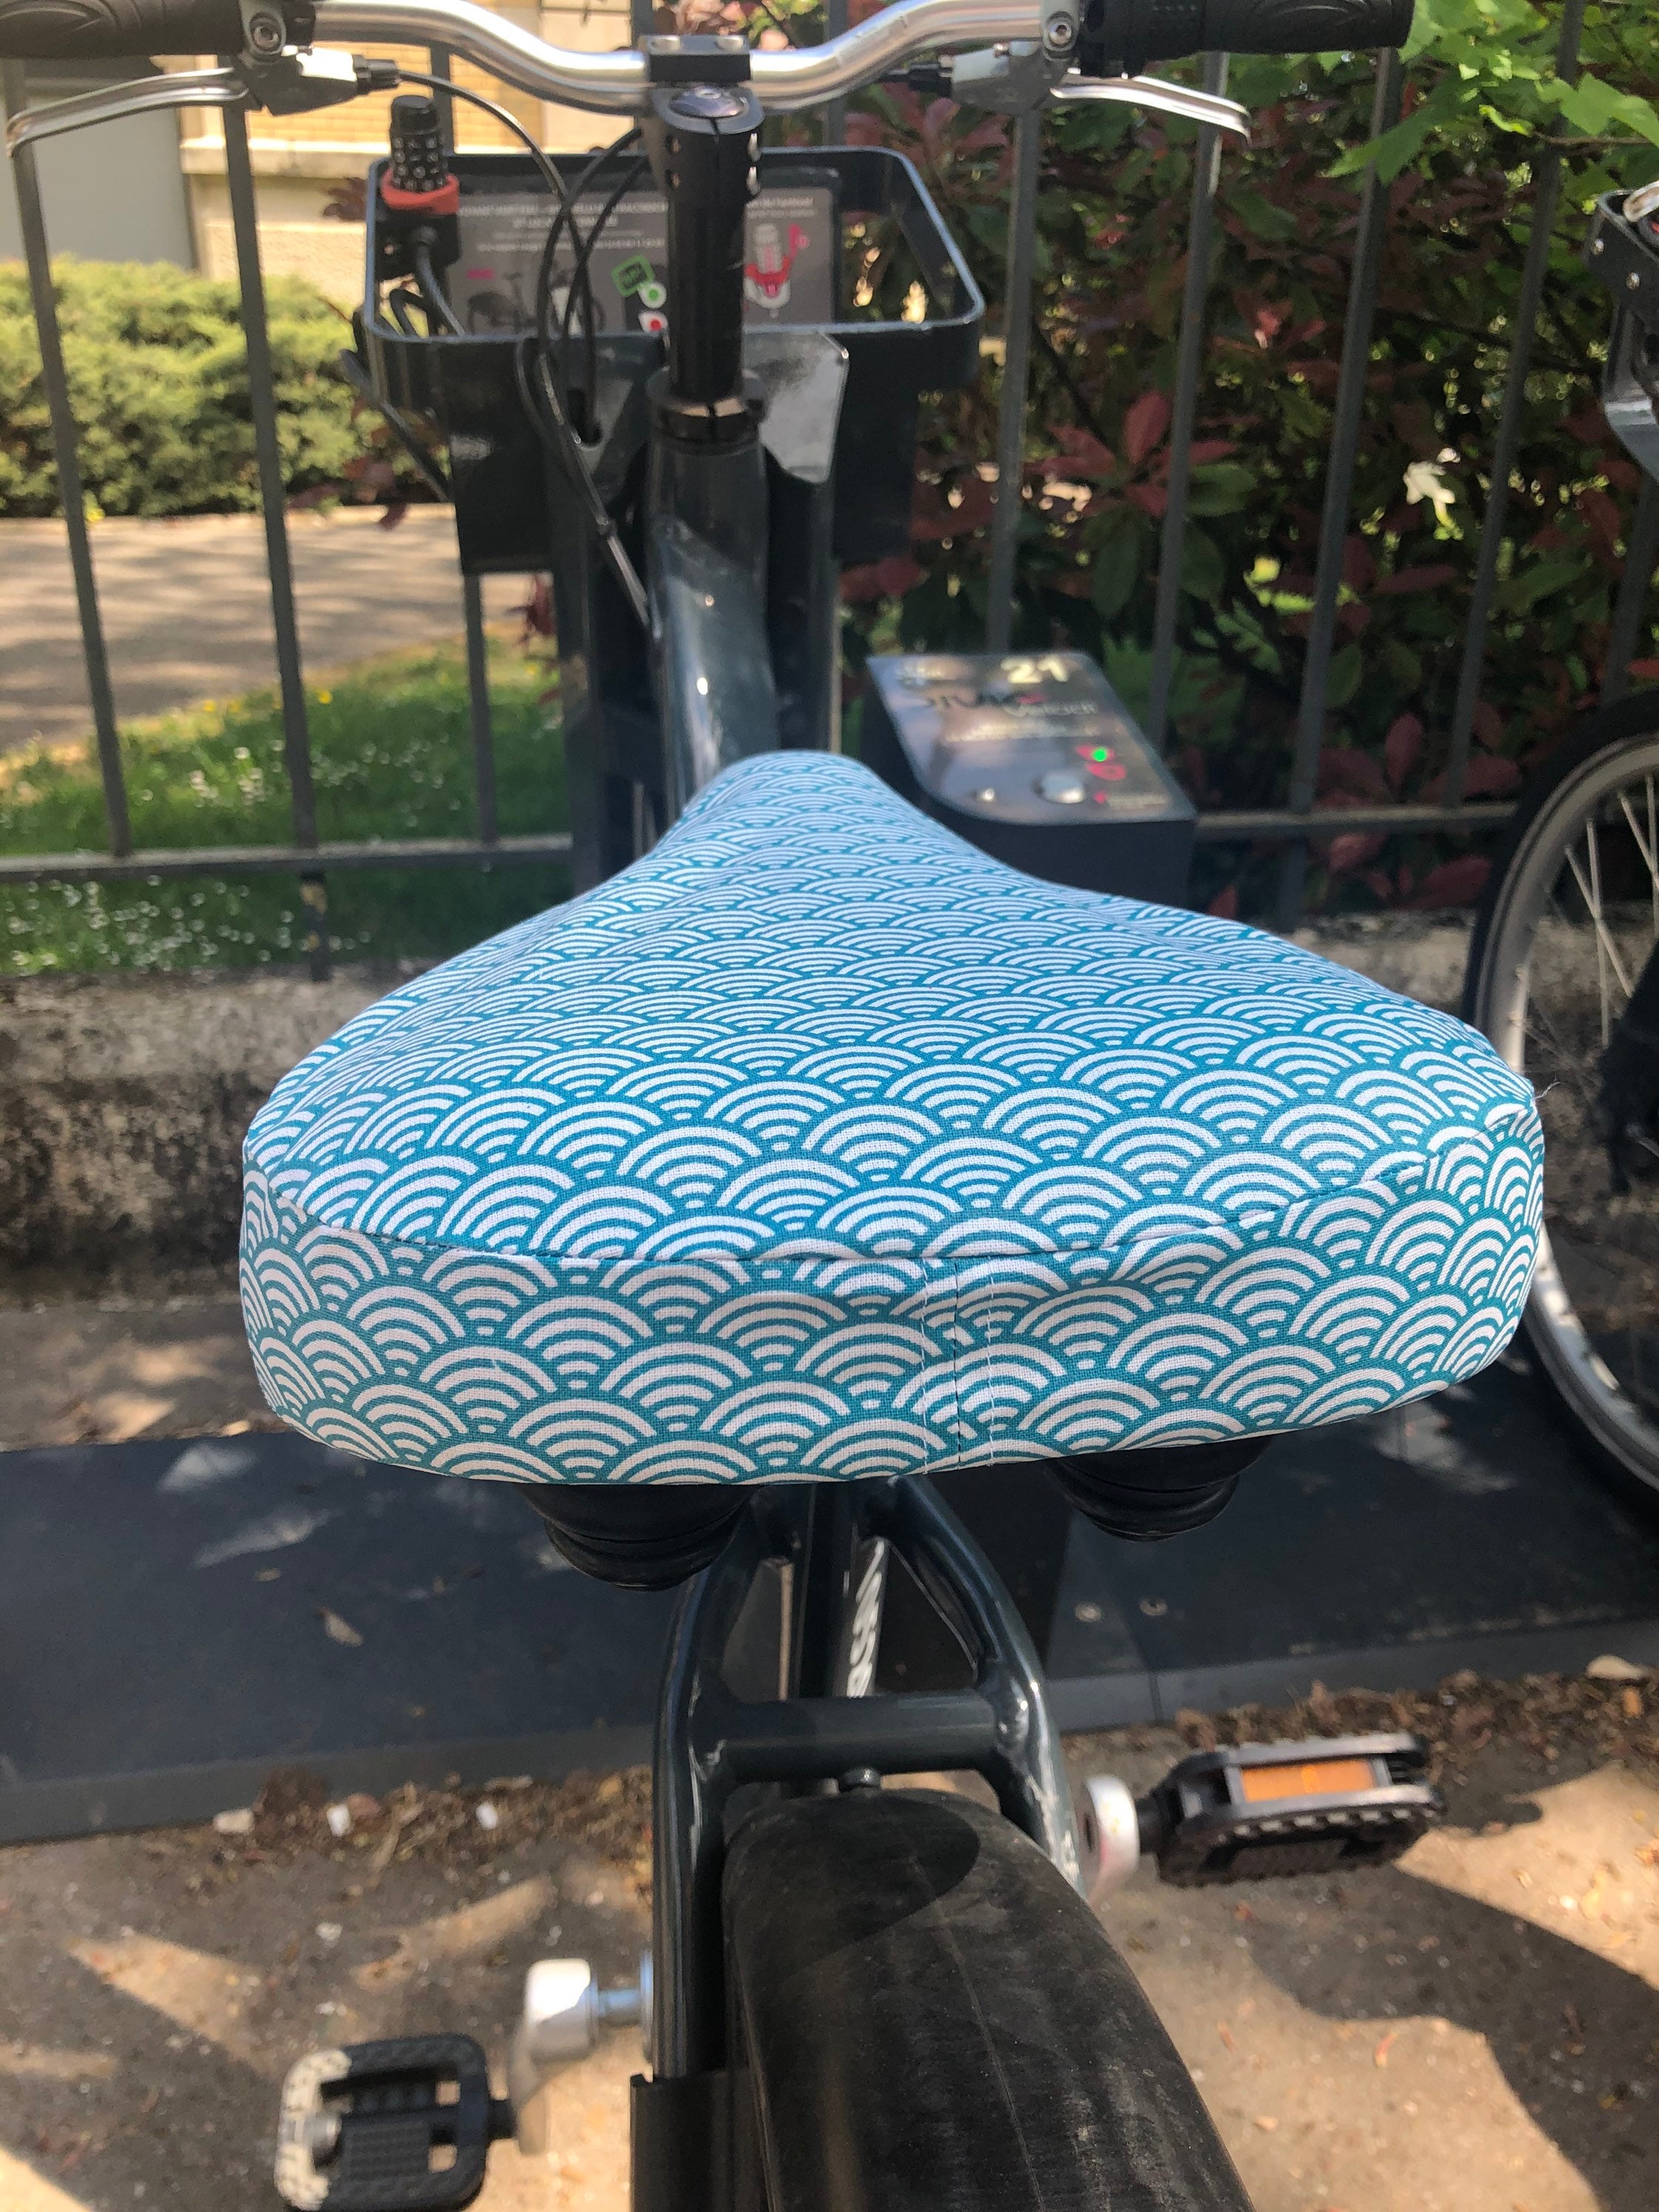 Housse pour selle de vélo, imperméable en tissu enduit moutarde poissons  Petite fouine - Créations textiles pour les enfants, les adultes et la  décoration